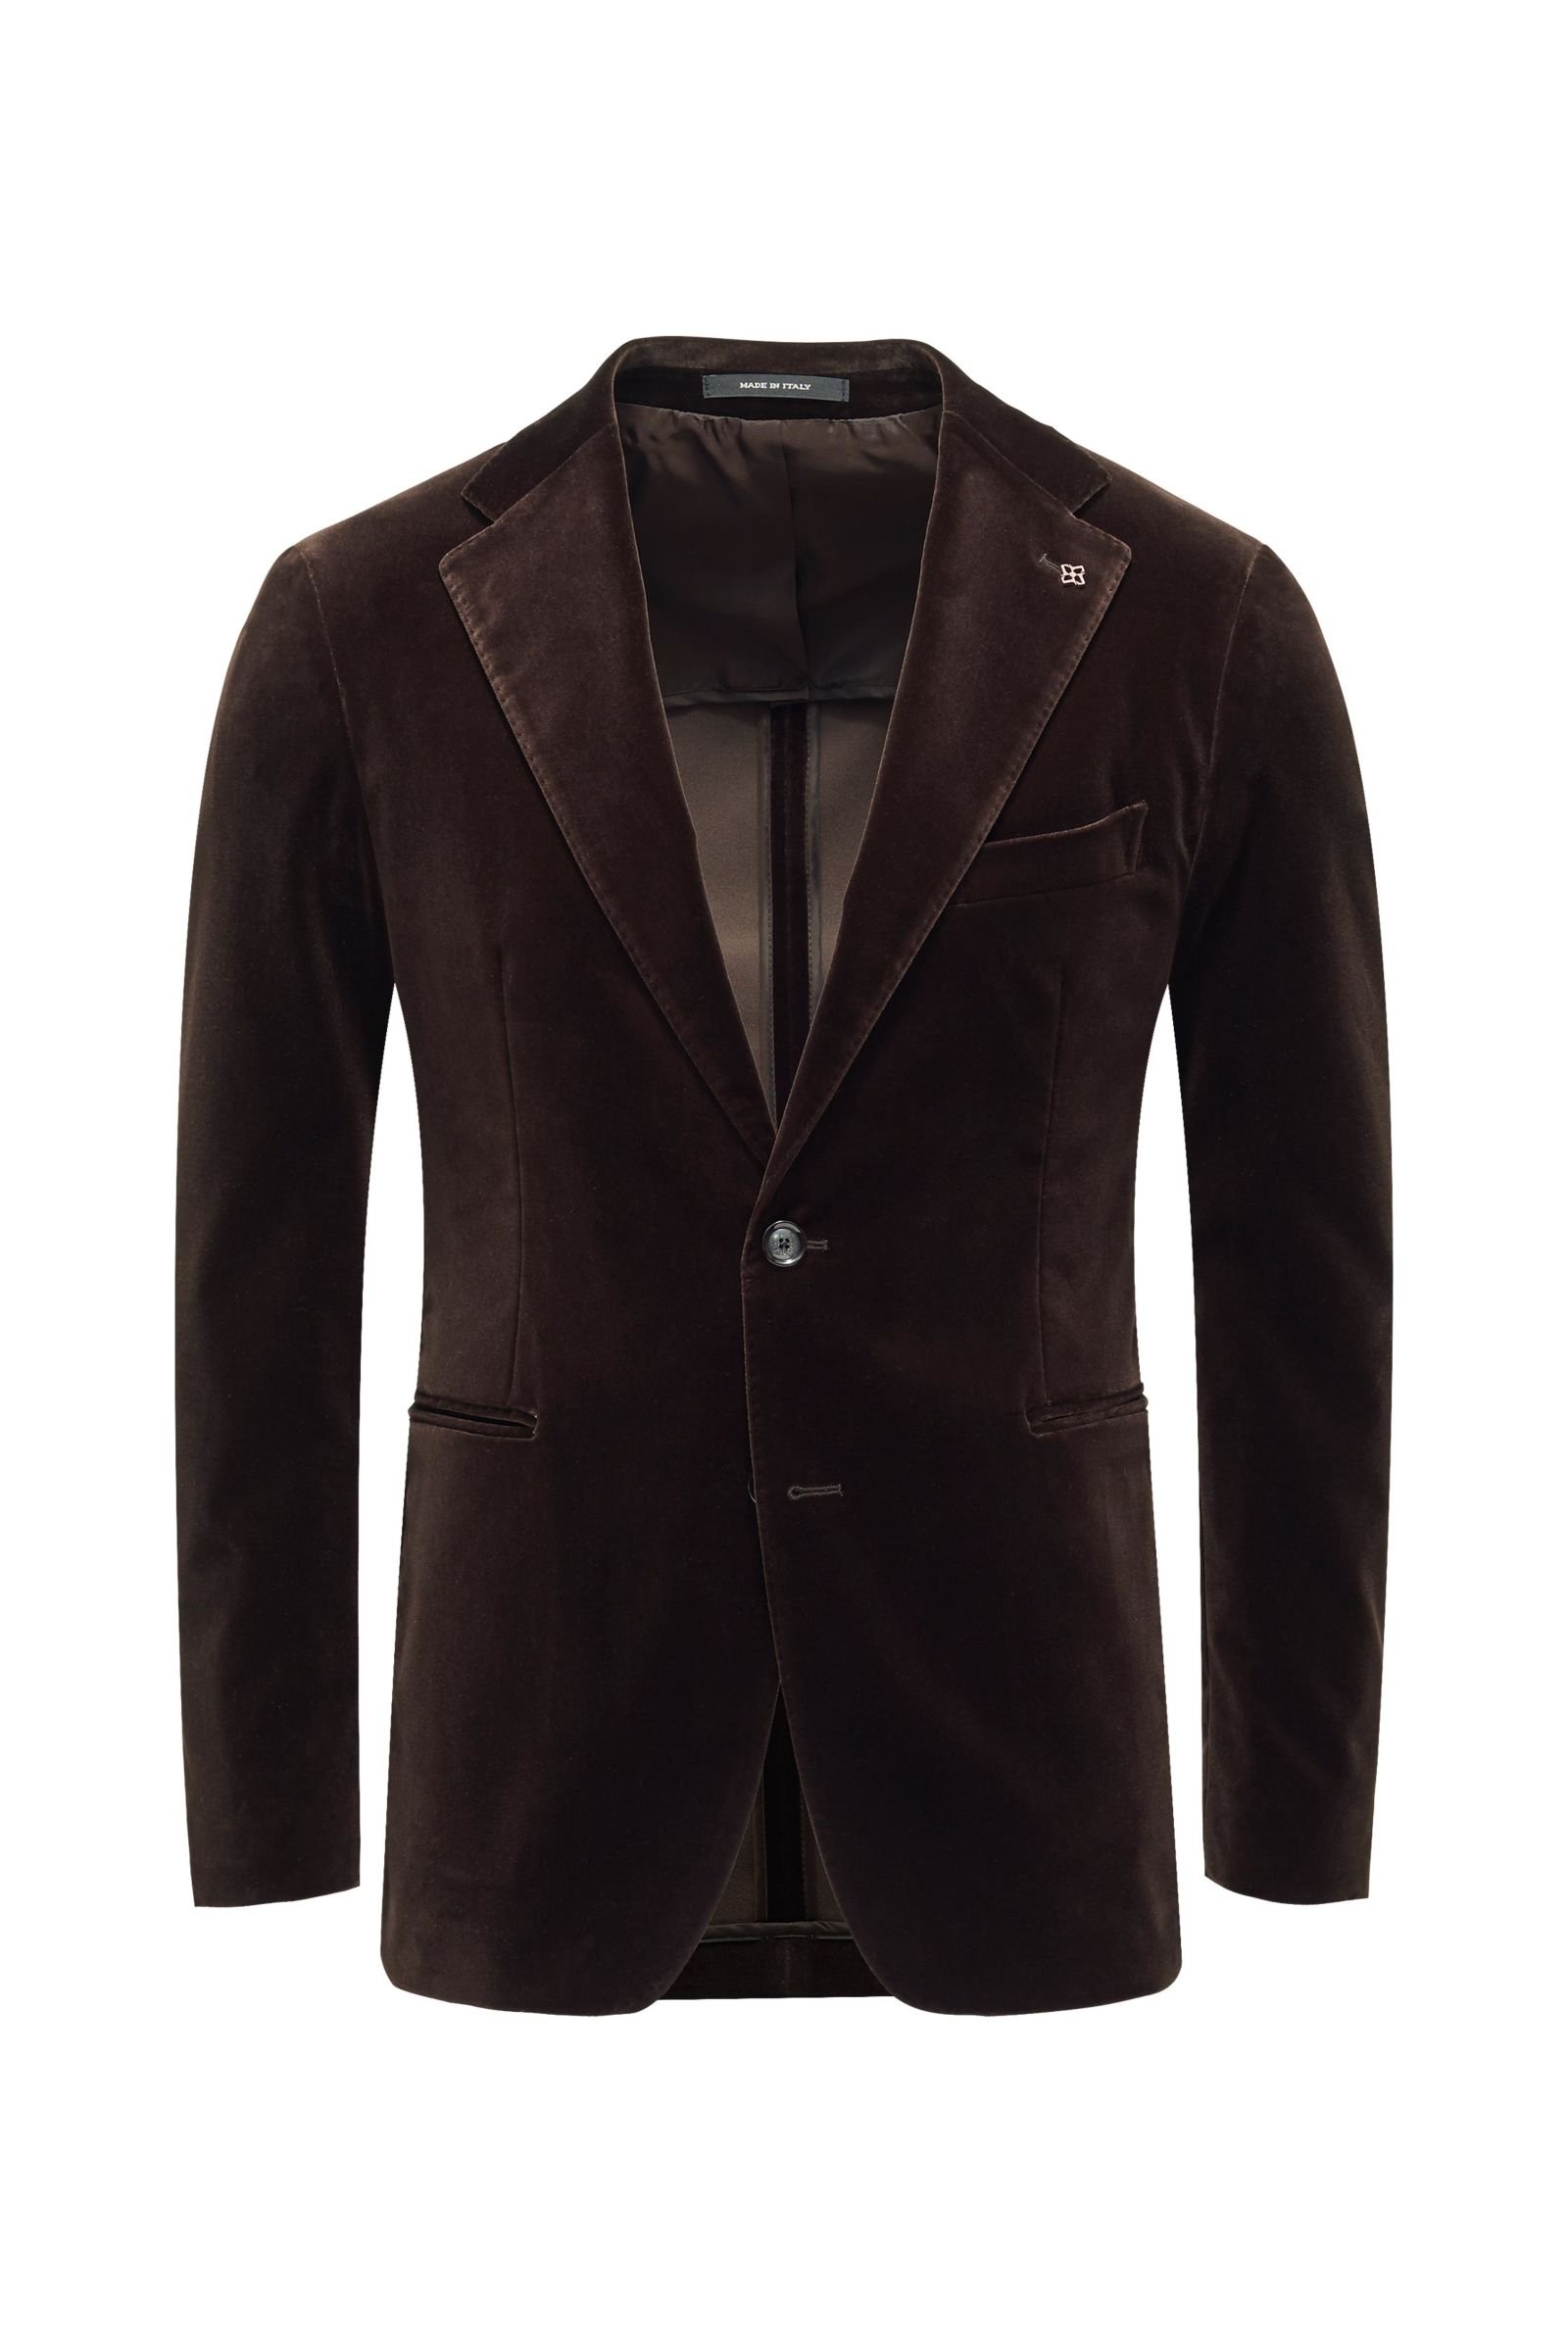 Velvet jacket dark brown